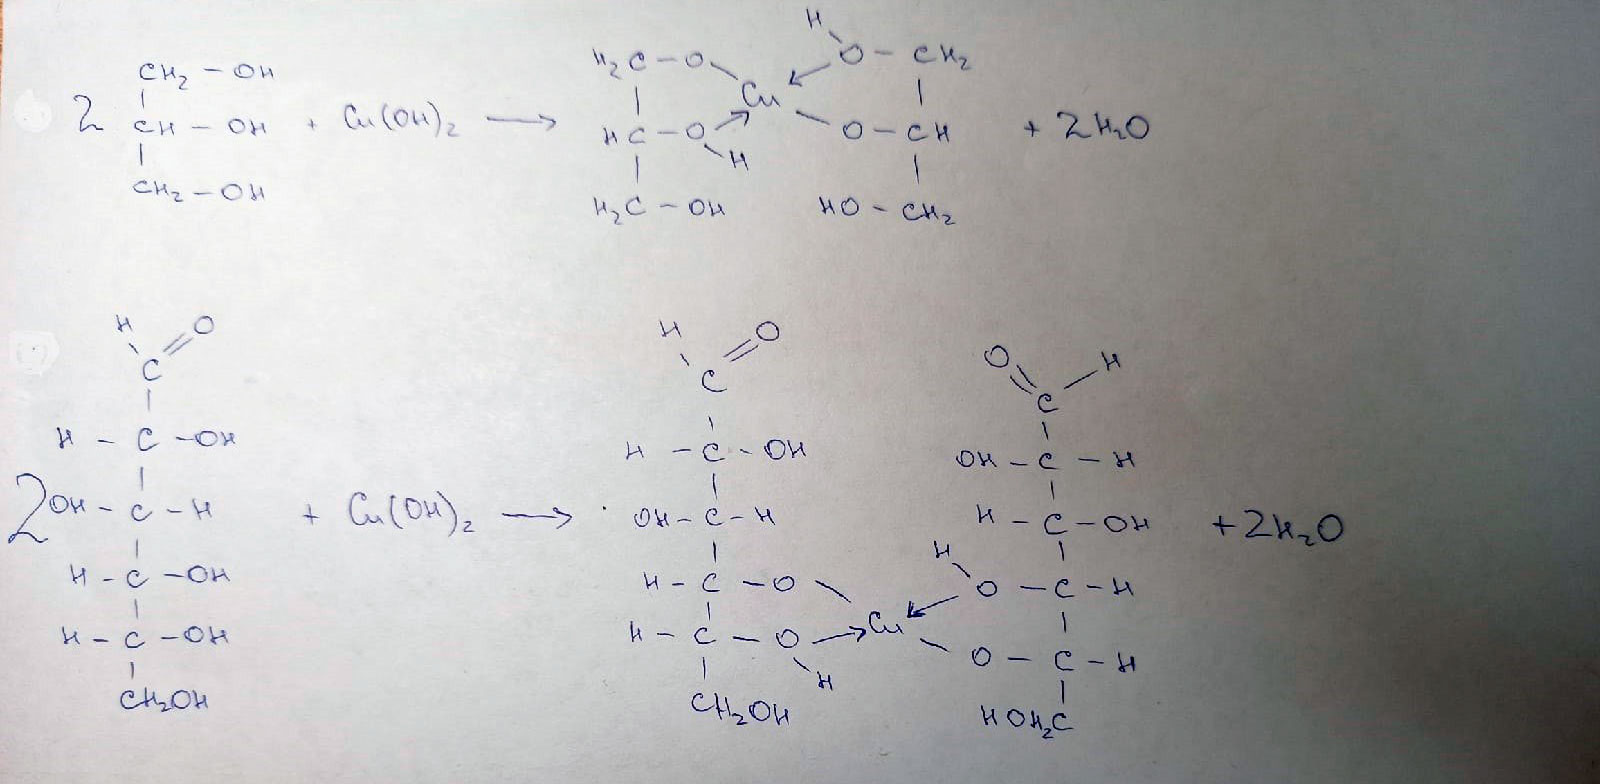 Глицерин реагирует с гидроксидом меди 2. Глицерин и оксид меди. Формальдегид и гидроксид меди 2. Глицерин и гидроксид меди 2. Глицерин и оксид меди 2.